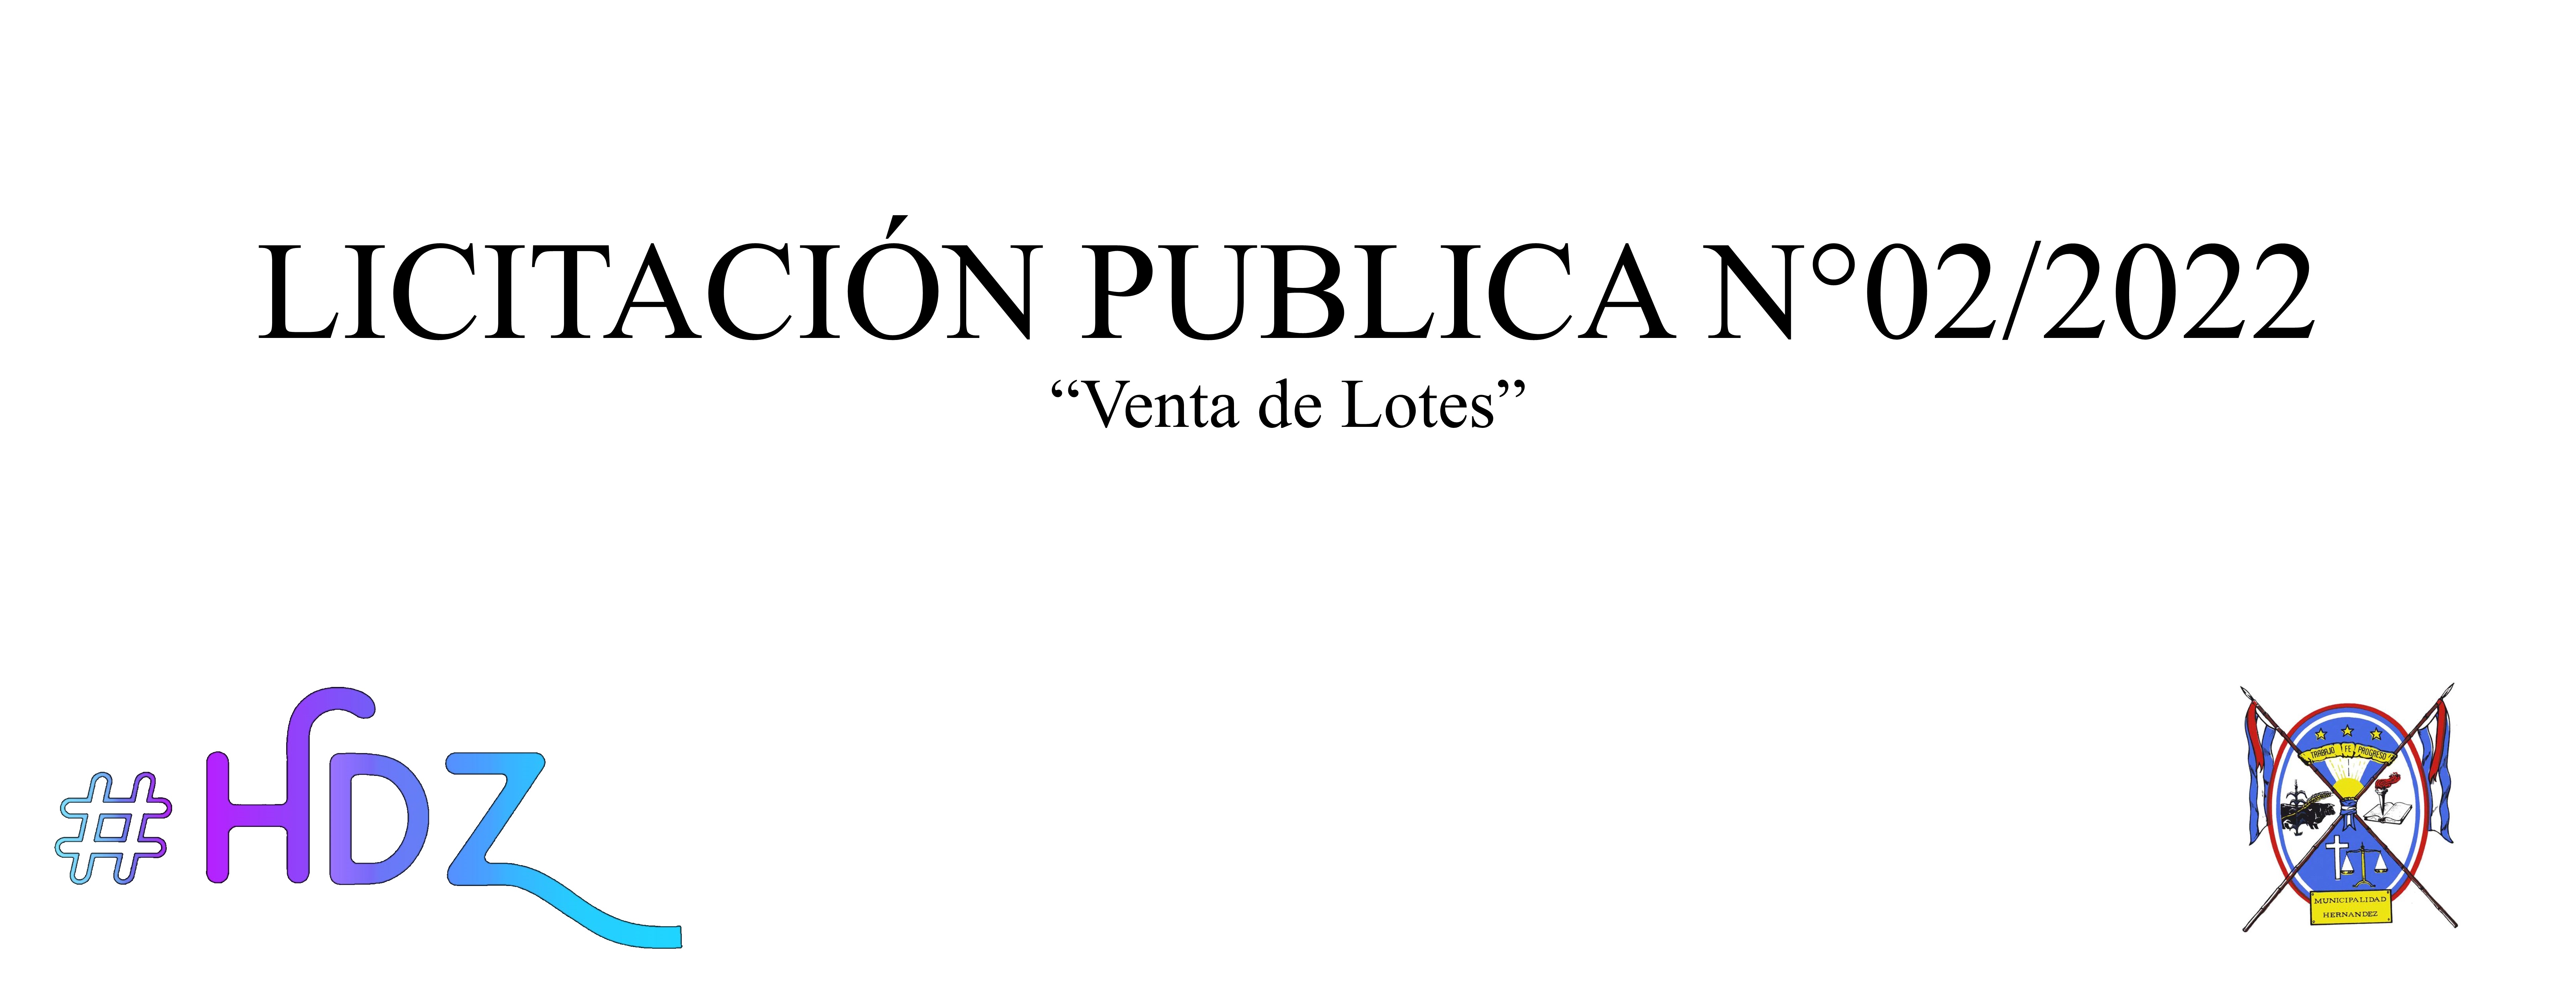 LICITACIÓN PÚBLICA N° 2/2022 - VENTA DE LOTES